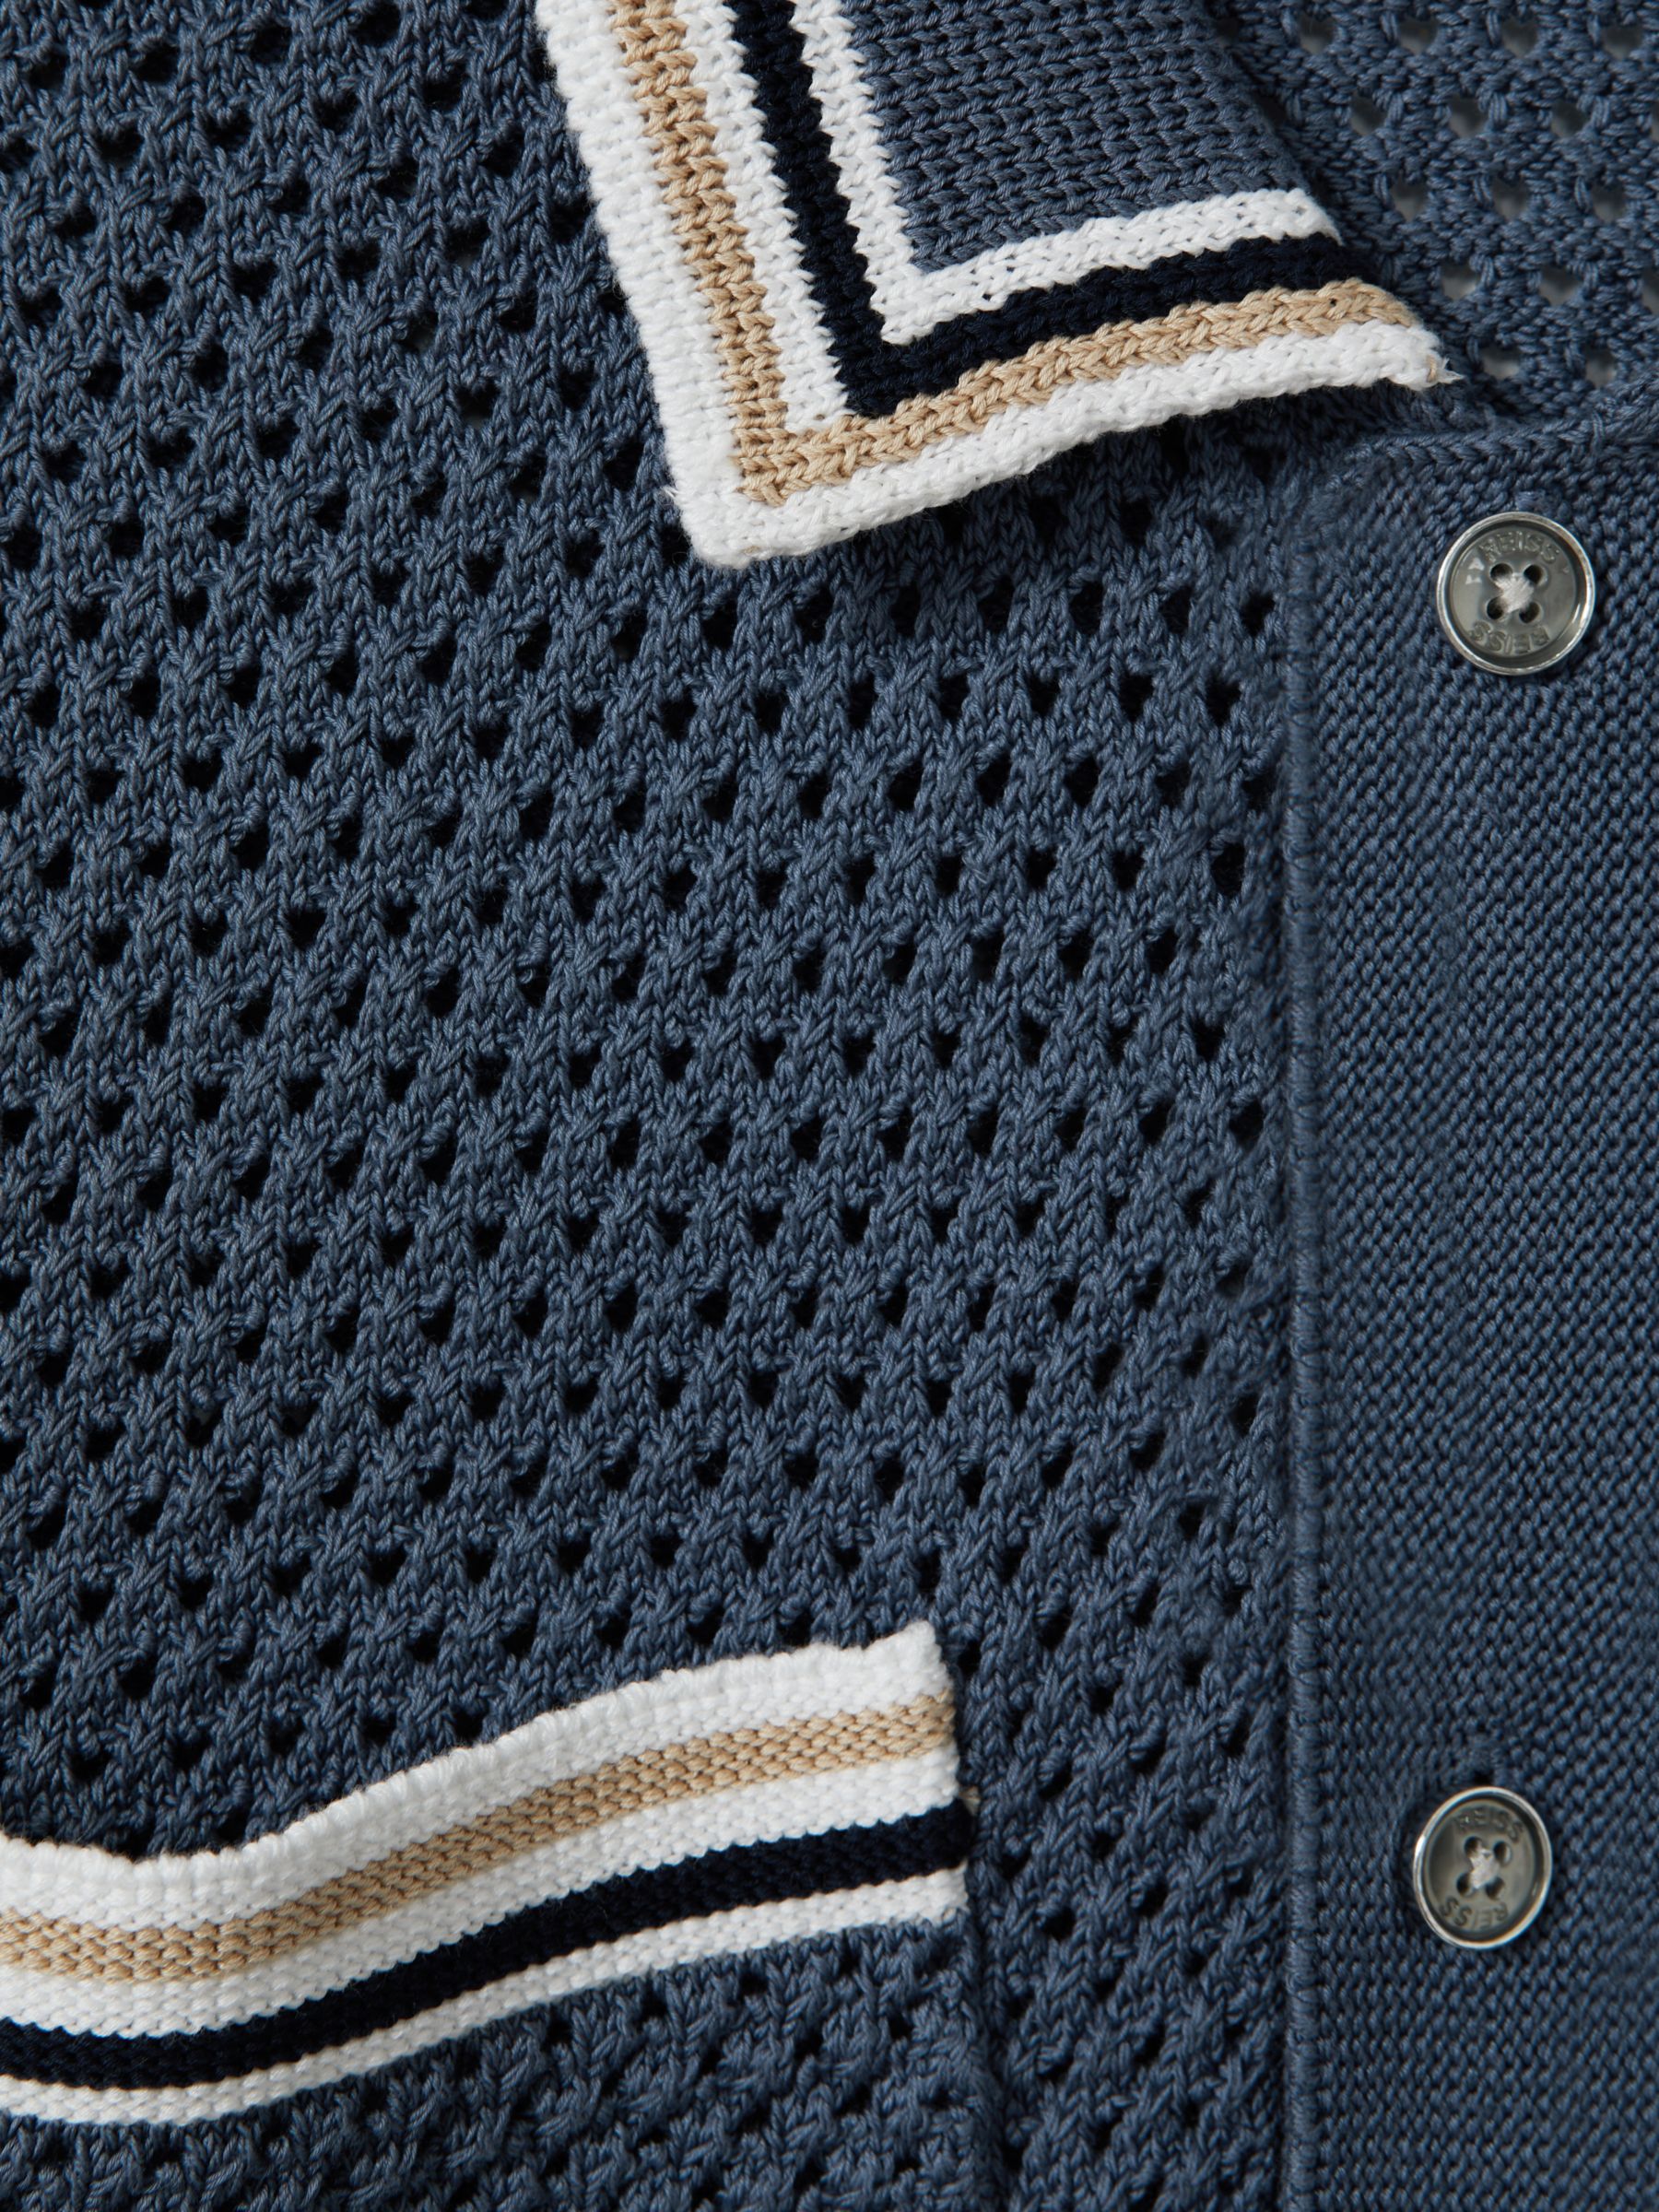 Reiss Coulson Short Sleeve Crochet Tipped Shirt, Blue, XS